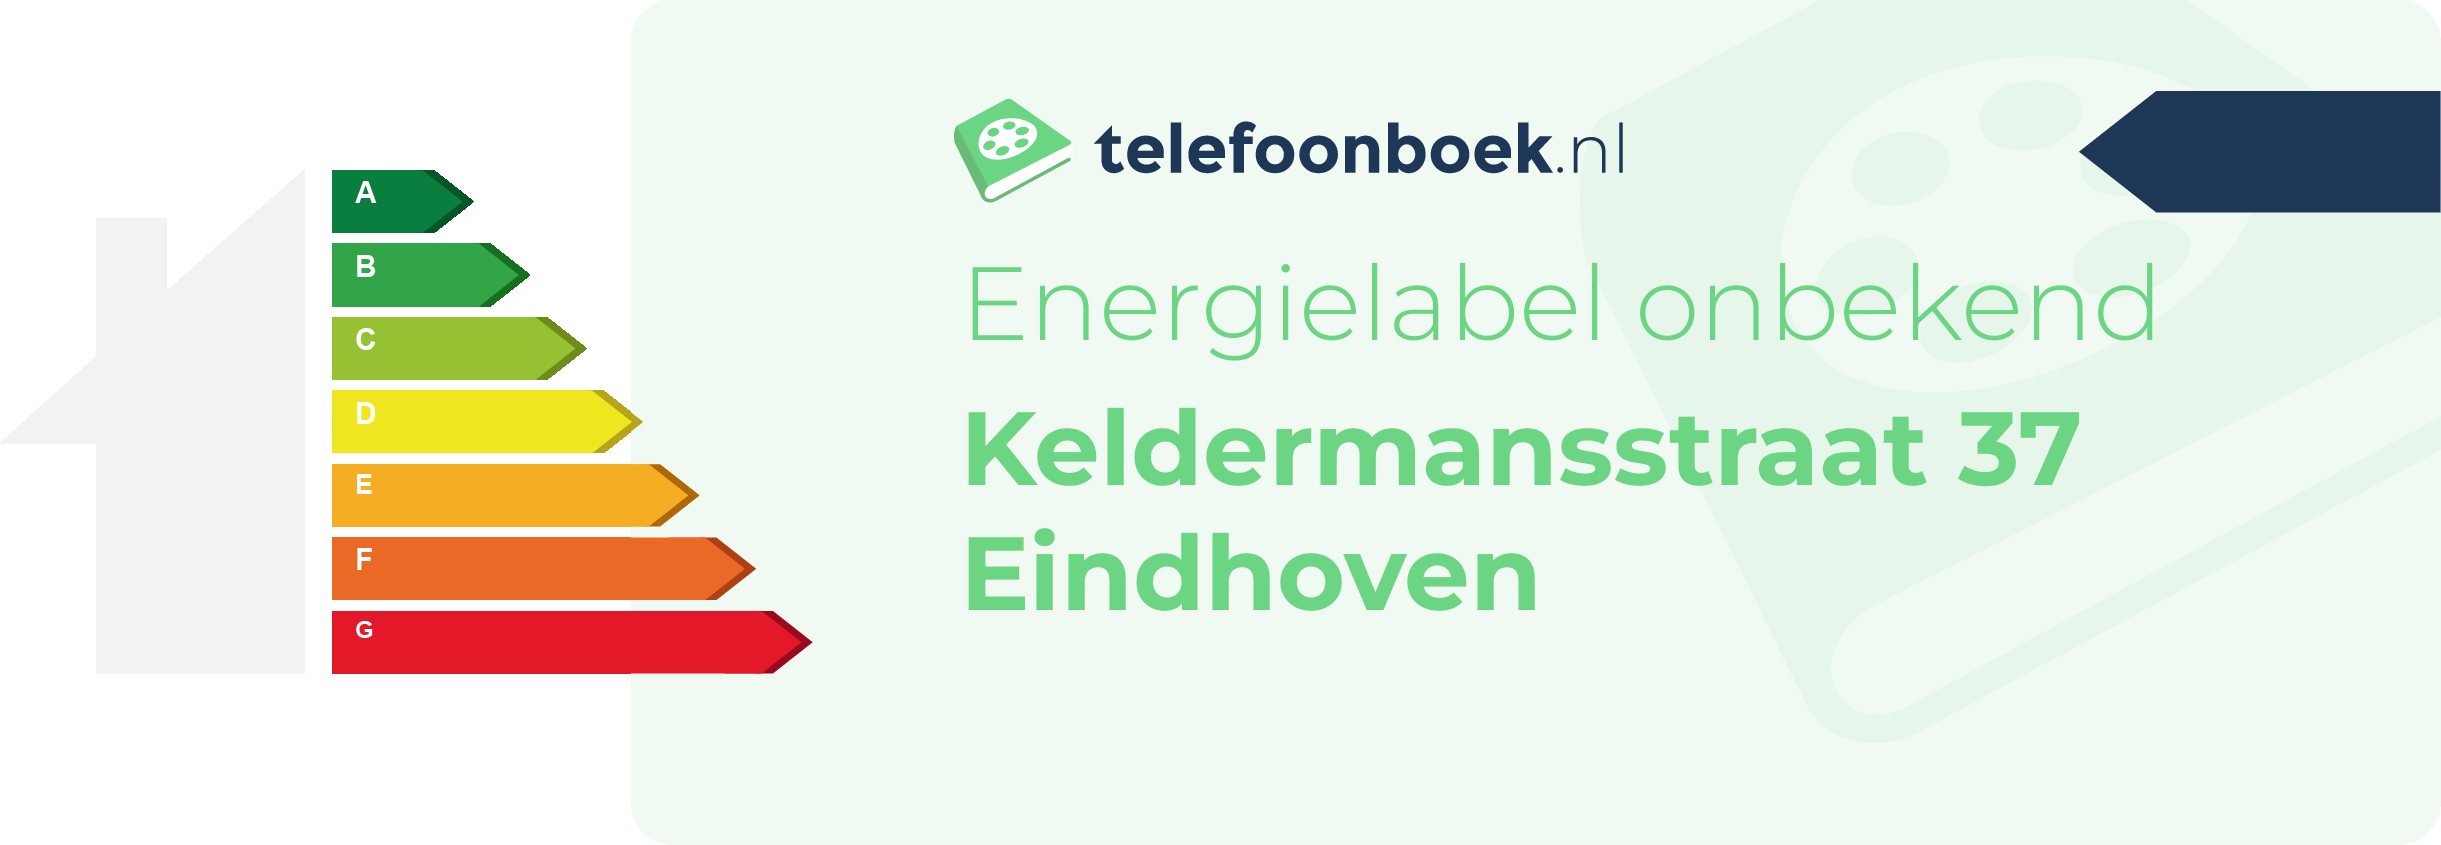 Energielabel Keldermansstraat 37 Eindhoven